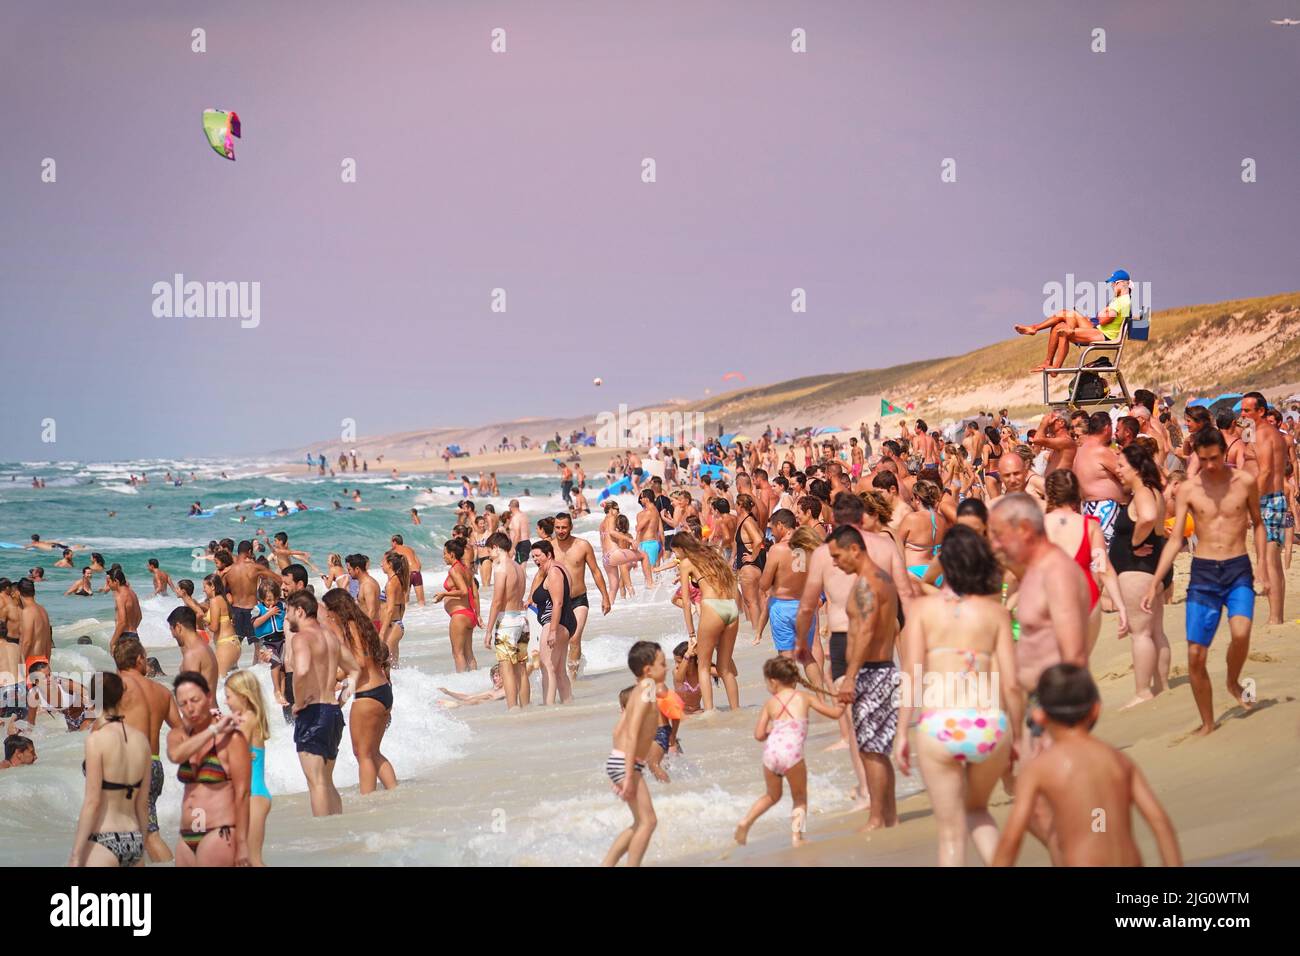 Spiaggia sovraffollata sull'oceano atlantico in una giornata estiva. Lacanau, Francia - Agosto 2018 Foto Stock